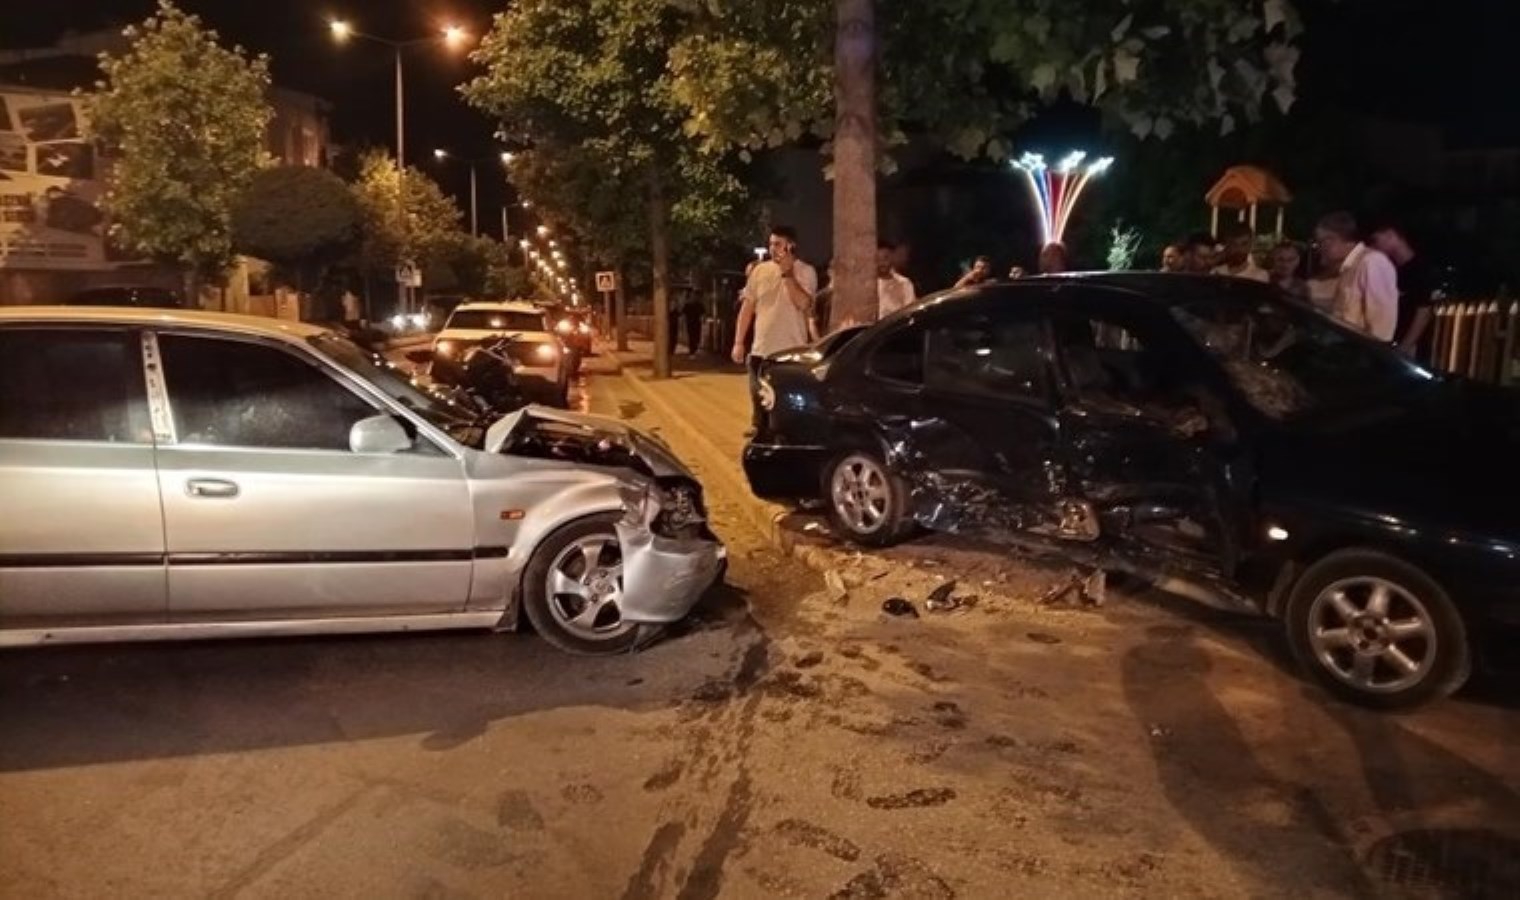 Samsun’da iki otomobil çarpıştı: 2 yaralı!